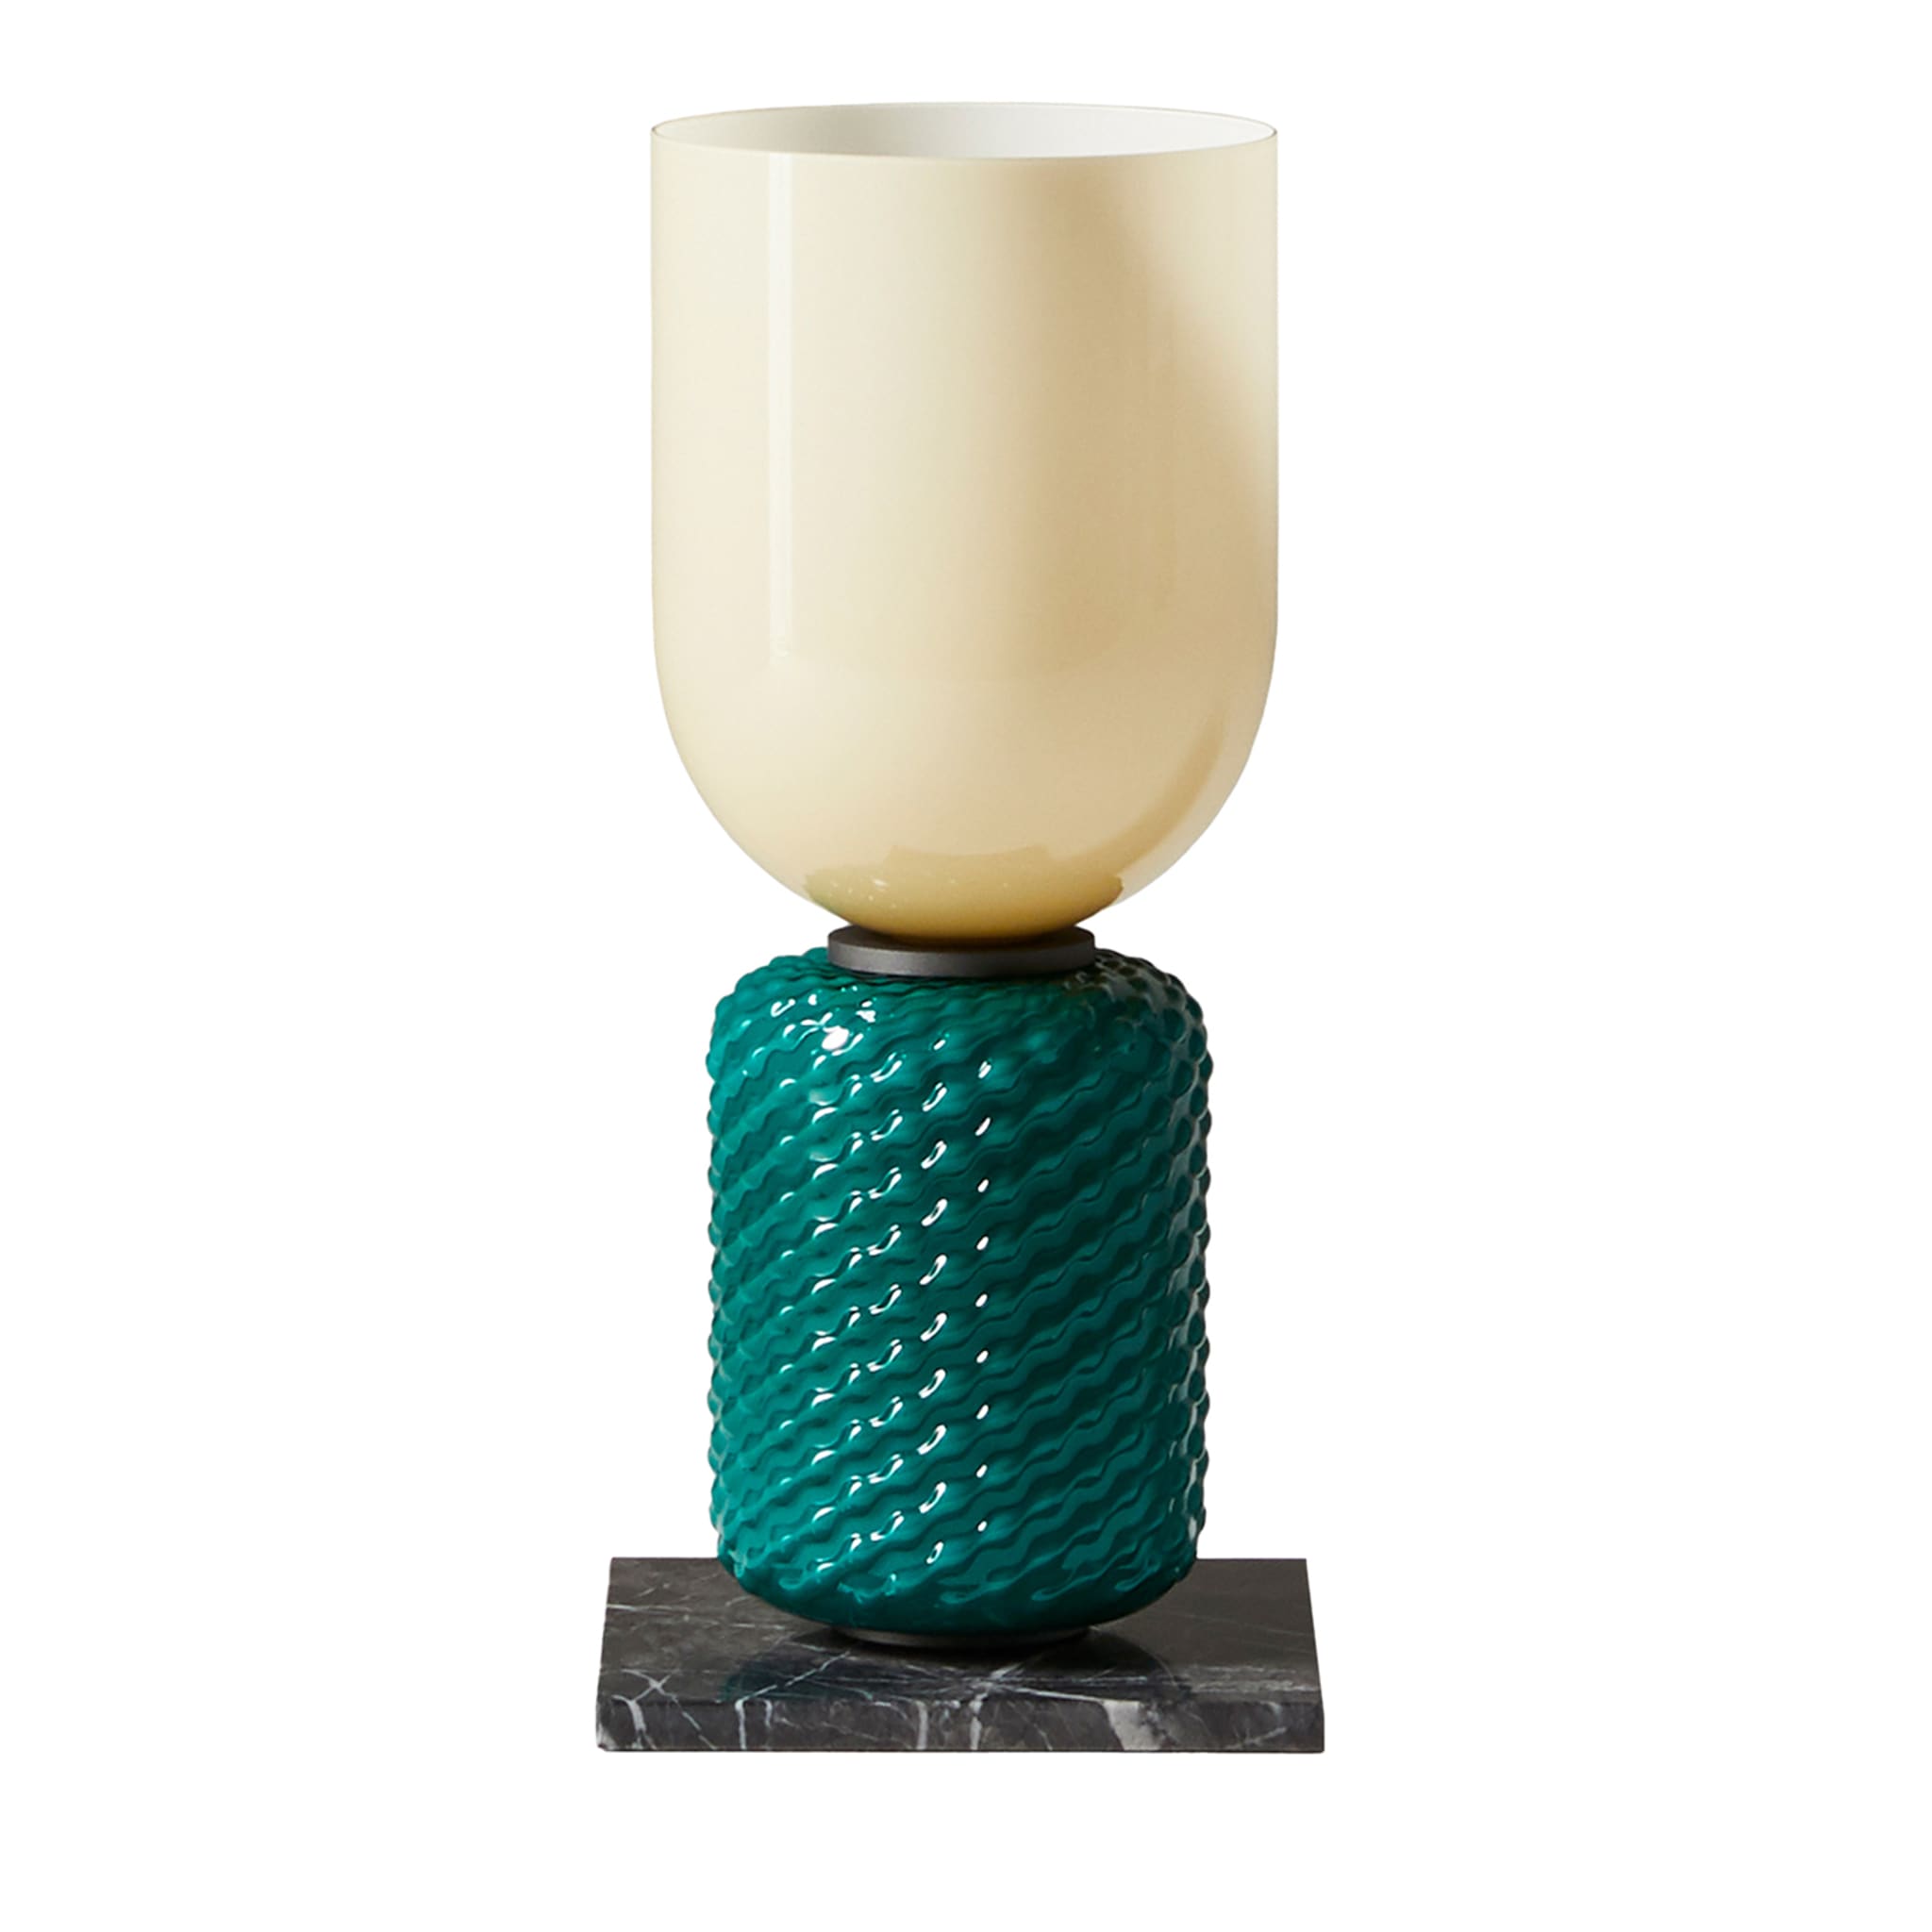 Lampe de table Ficupala #1 - Vue principale